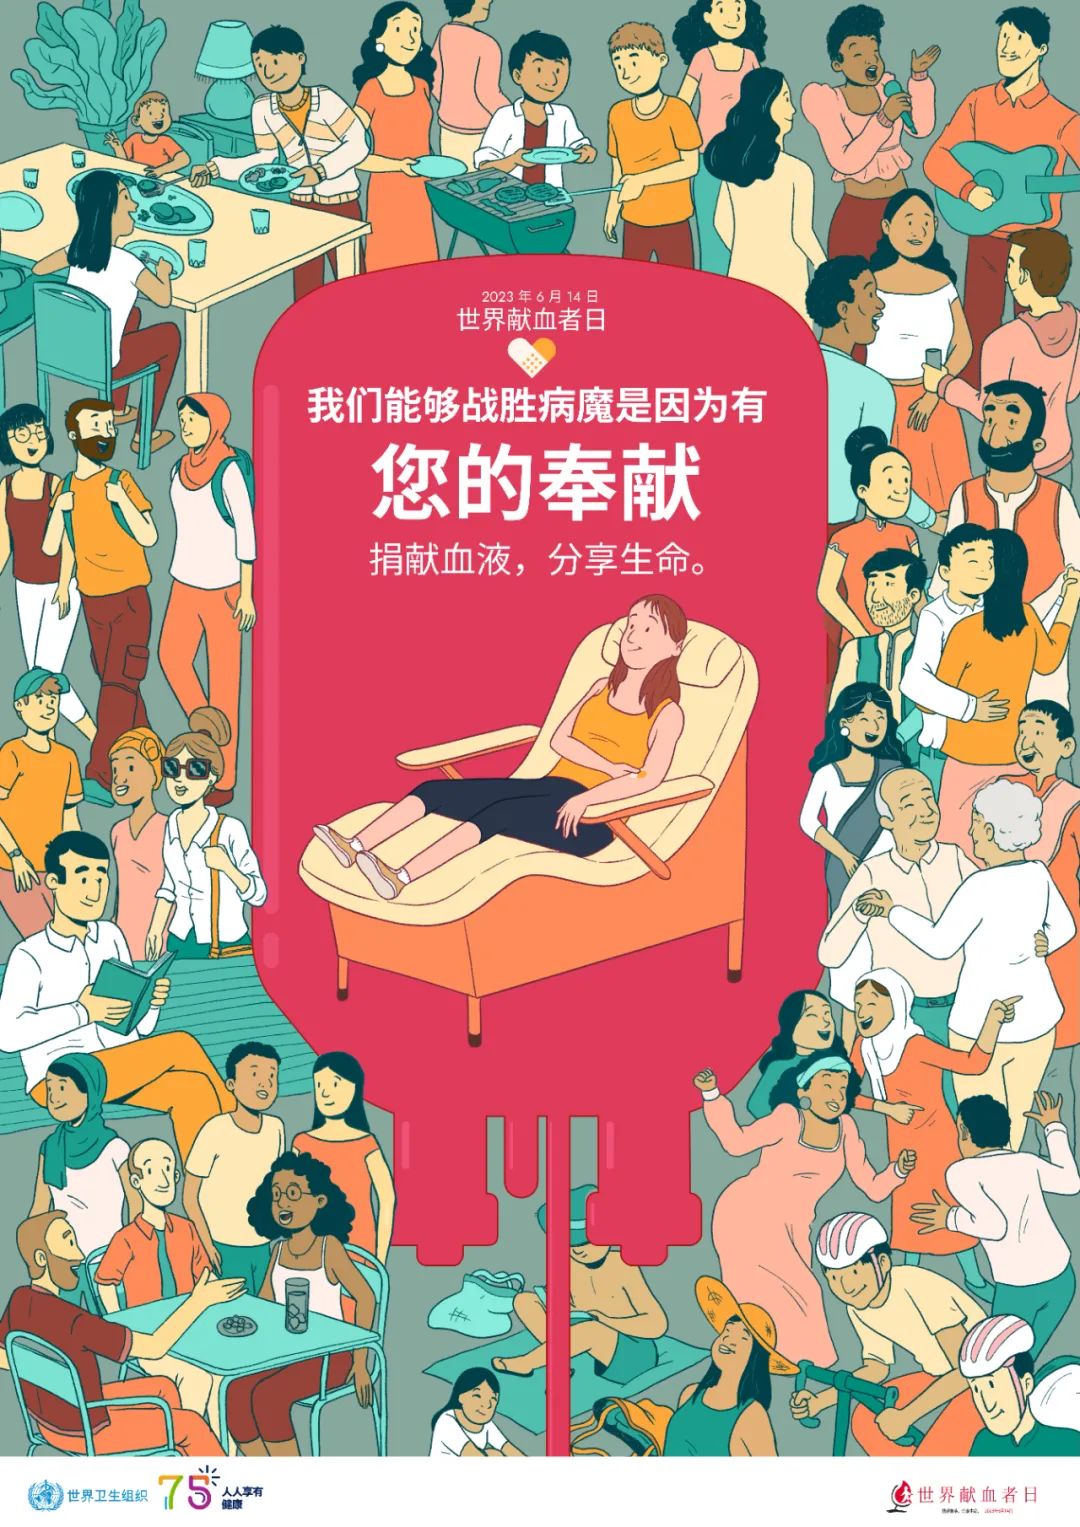 世界卫生组织授权发布2023年世界献血者日中文海报